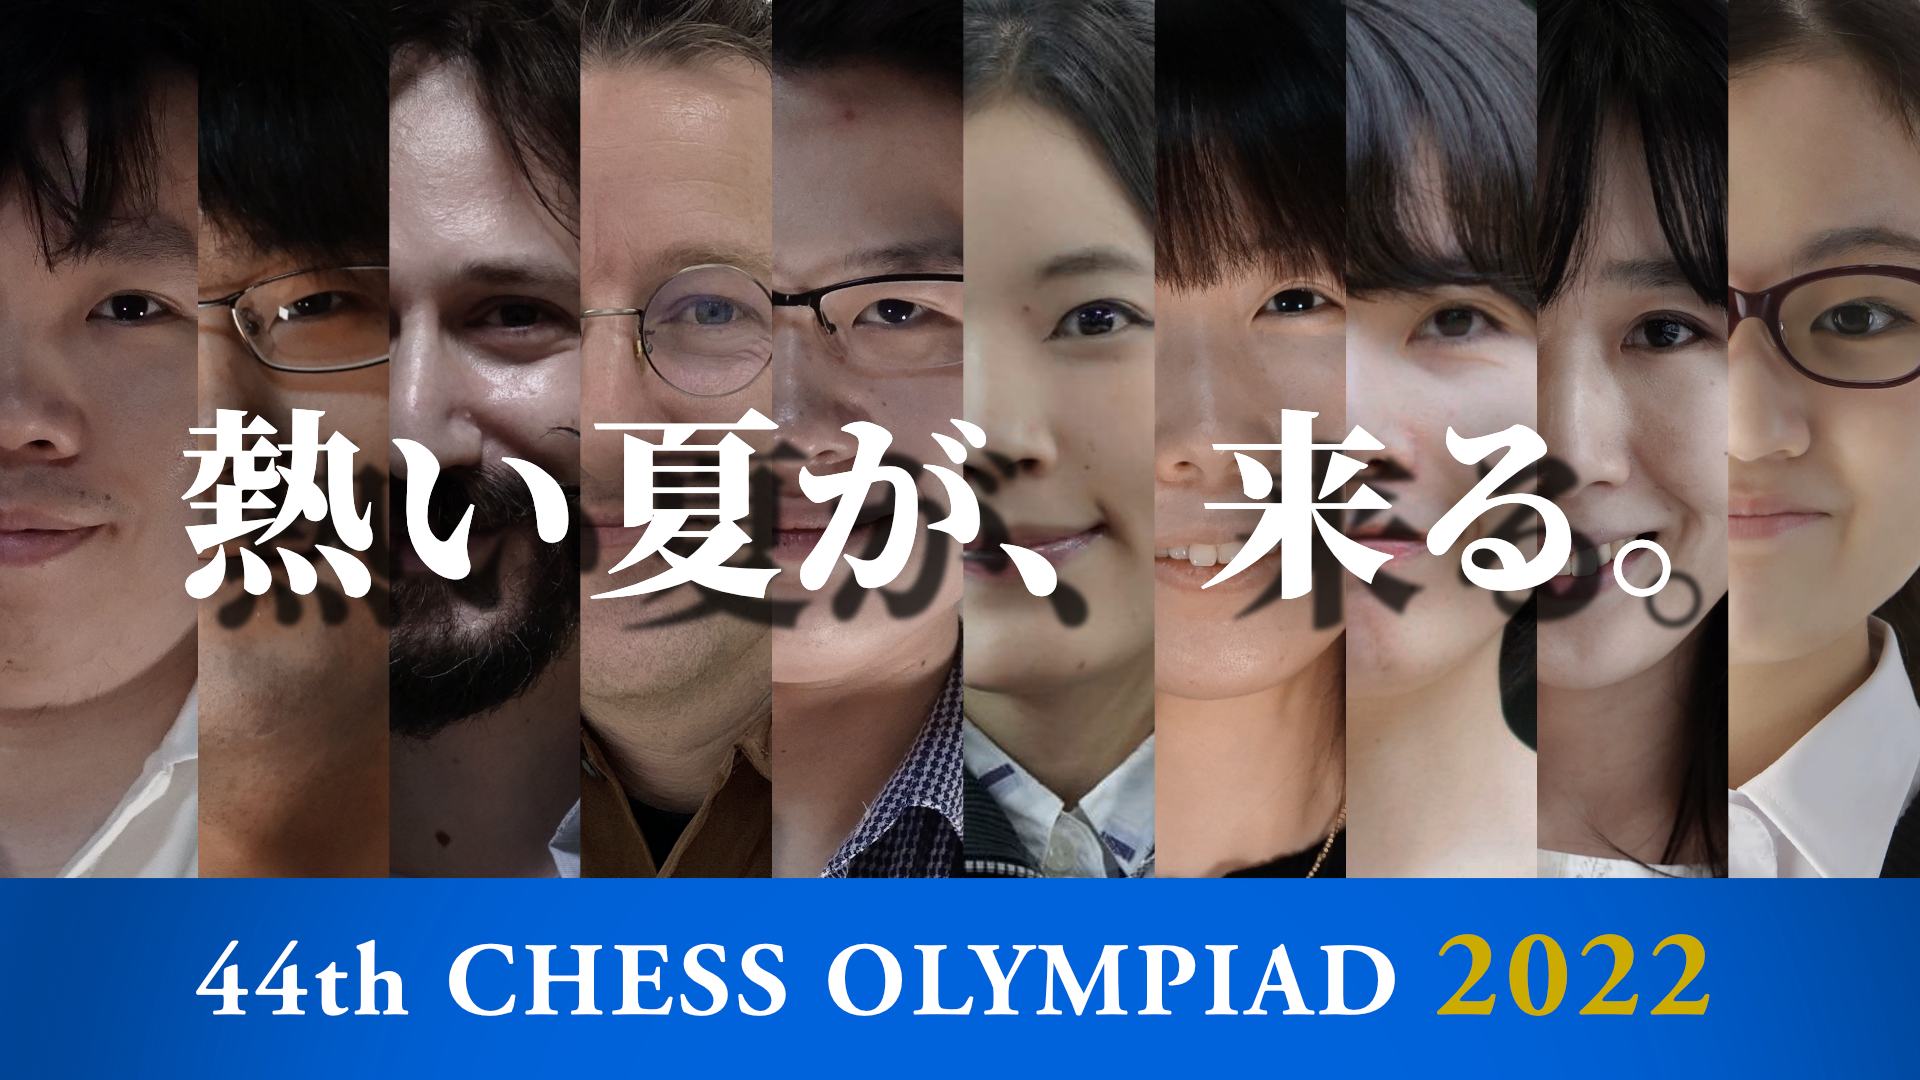 Chess Olympiad 2022  Winner List - Schedule